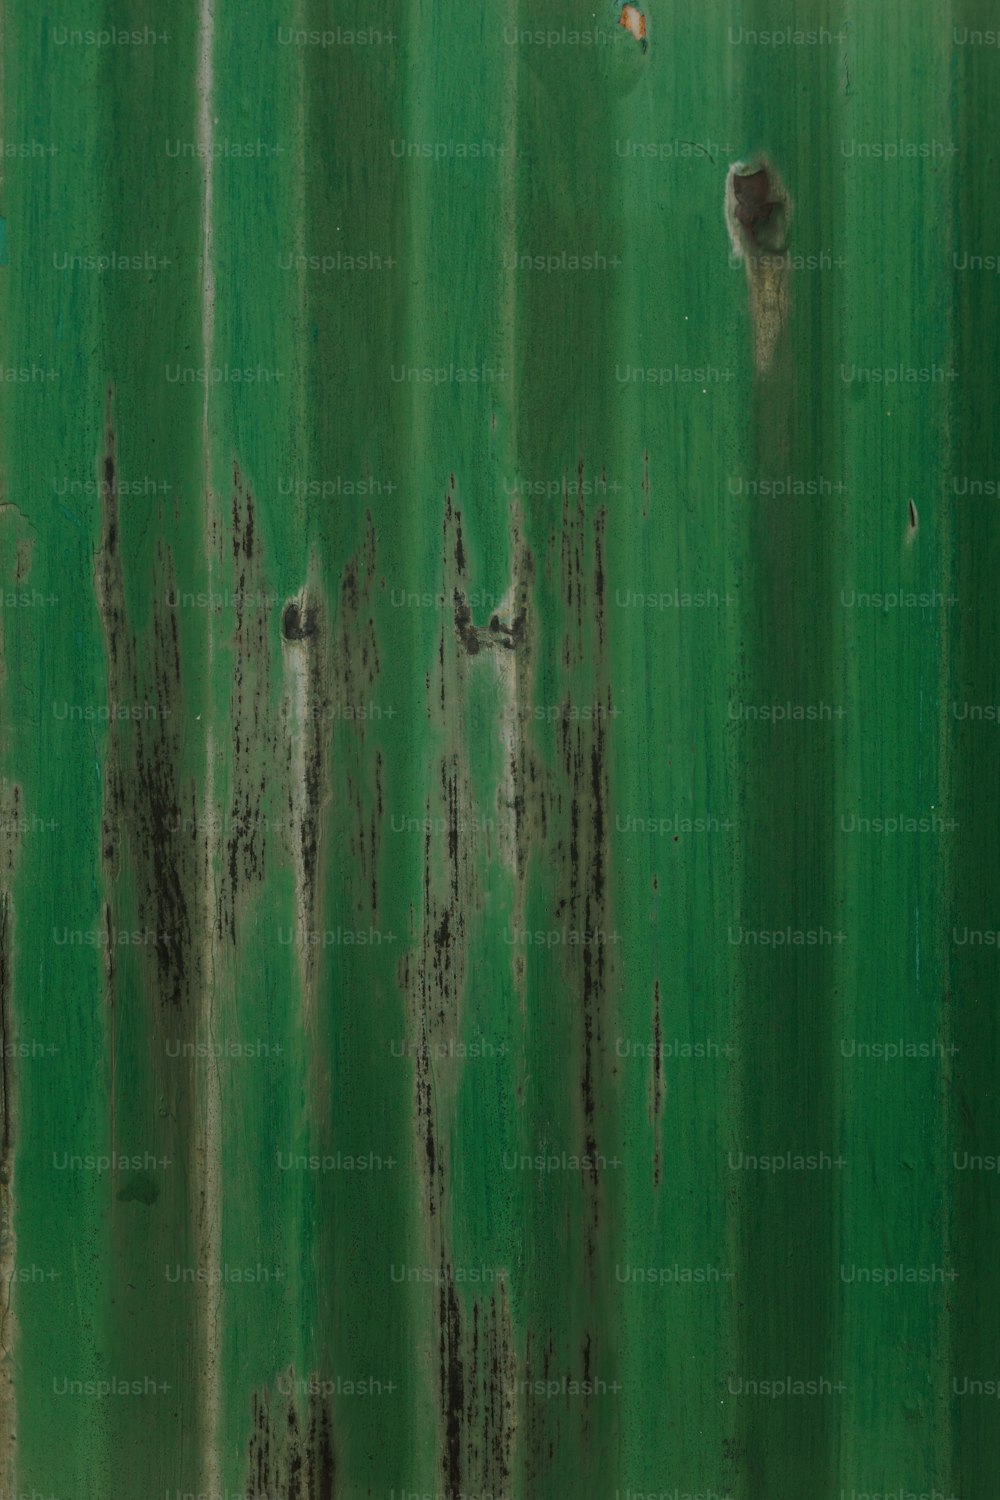 eine verrostete Metalloberfläche mit grüner Farbe